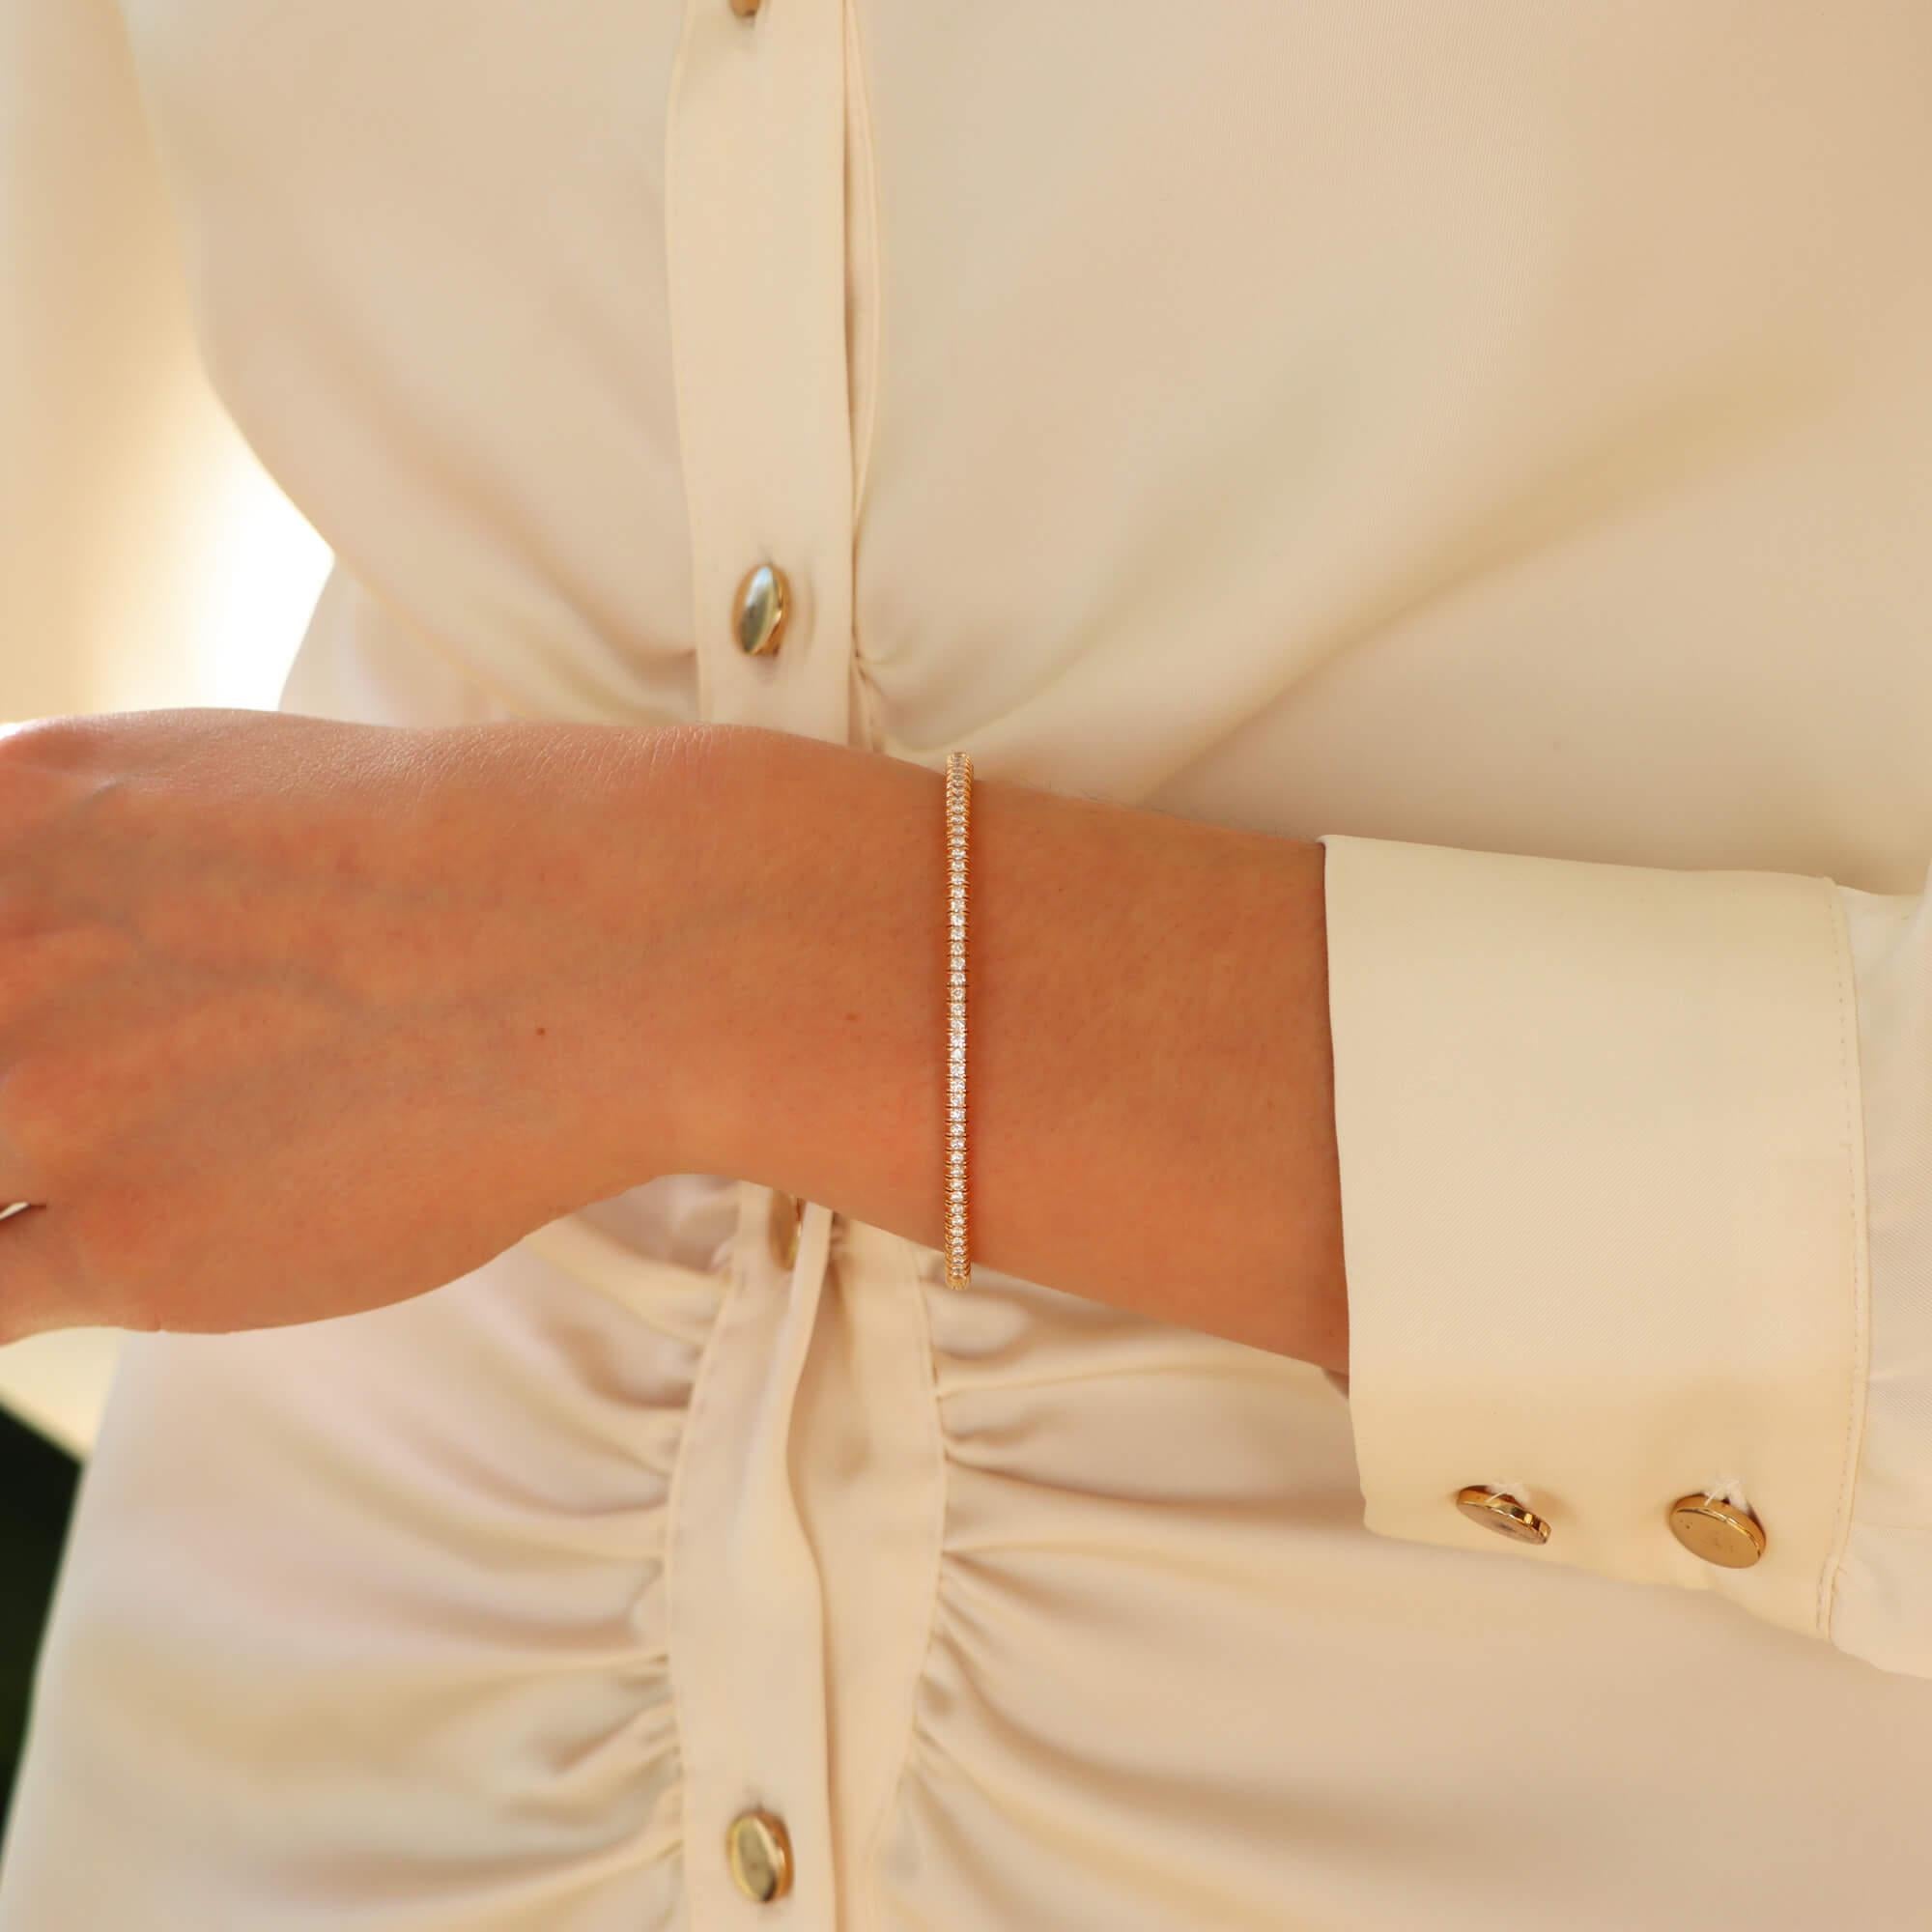 Un bracelet à charnière classique en or rose 18 carats de Cartier 'Etincelle'.

La pièce est composée d'un solide bracelet de 3 millimètres qui s'articule d'un côté avec un système de fermeture par clic et un dispositif de sécurité. L'un des côtés